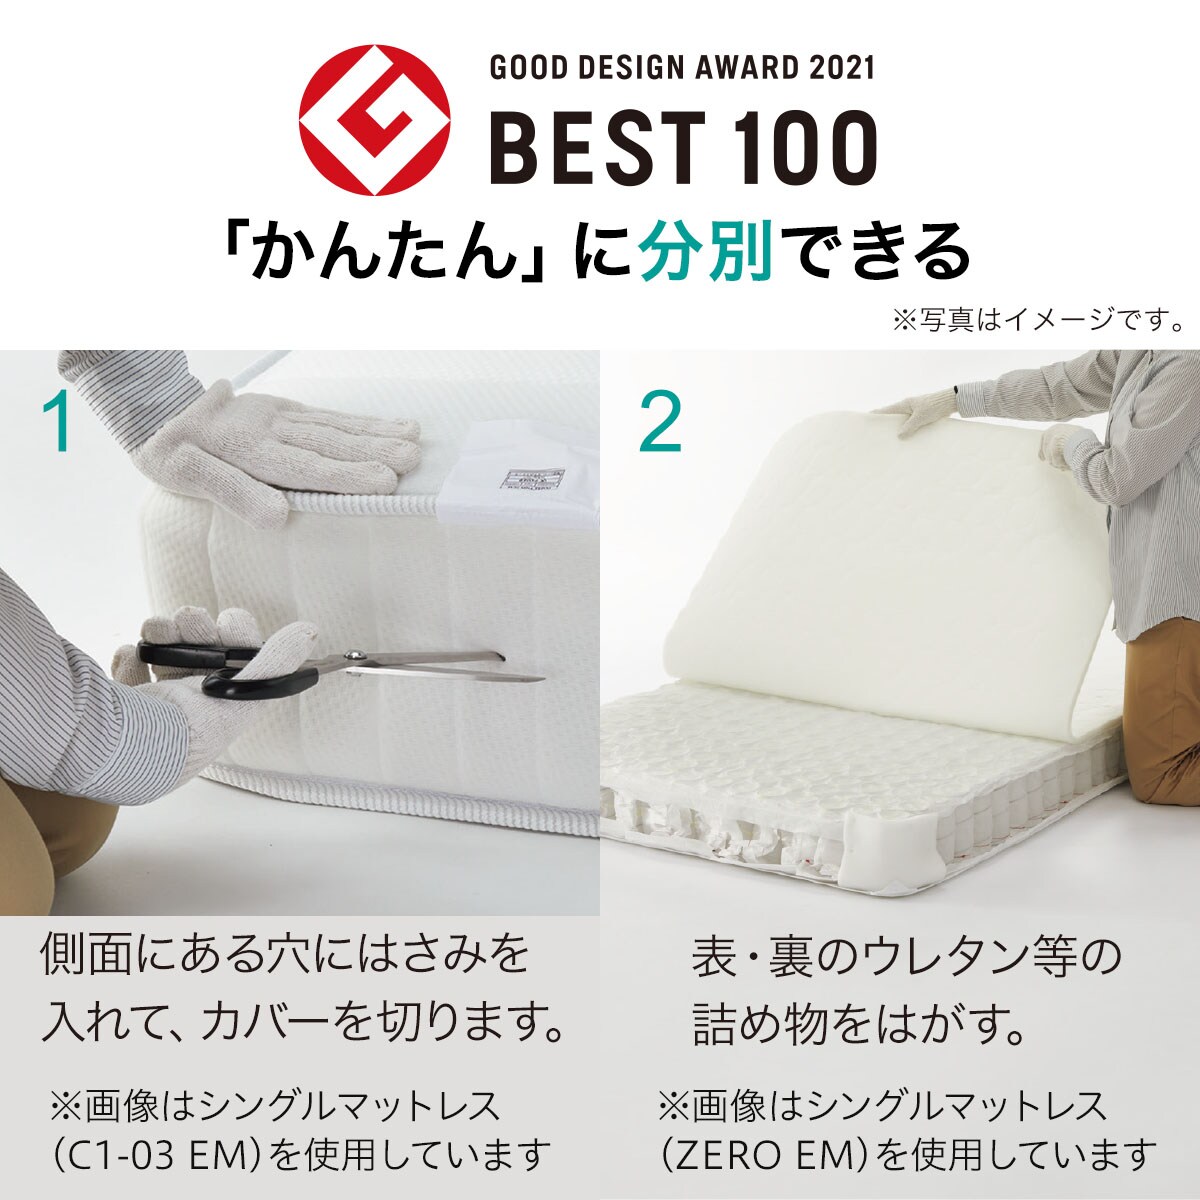 2段ベッド対応薄型ポケットコイルマットレスシングル (RG02VB)   【5年保証】